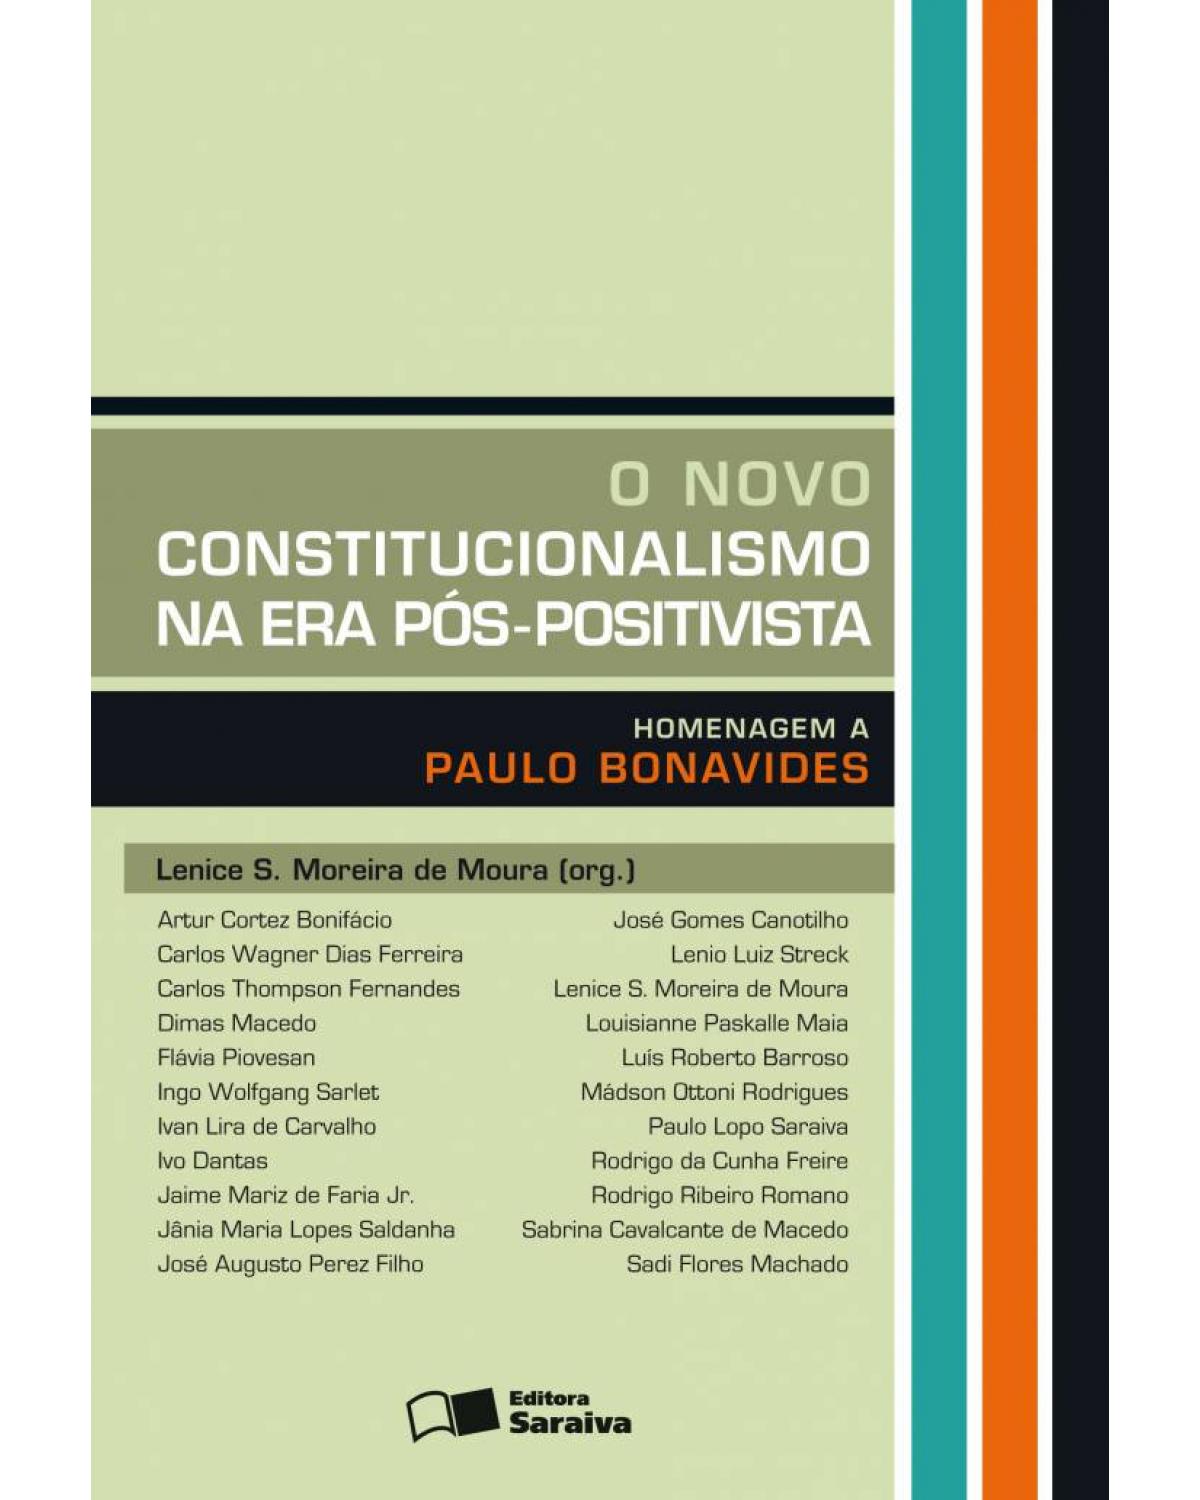 O novo constitucionalismo na era pós-positivista - homenagem a Paulo Bonavides - 1ª Edição | 2009